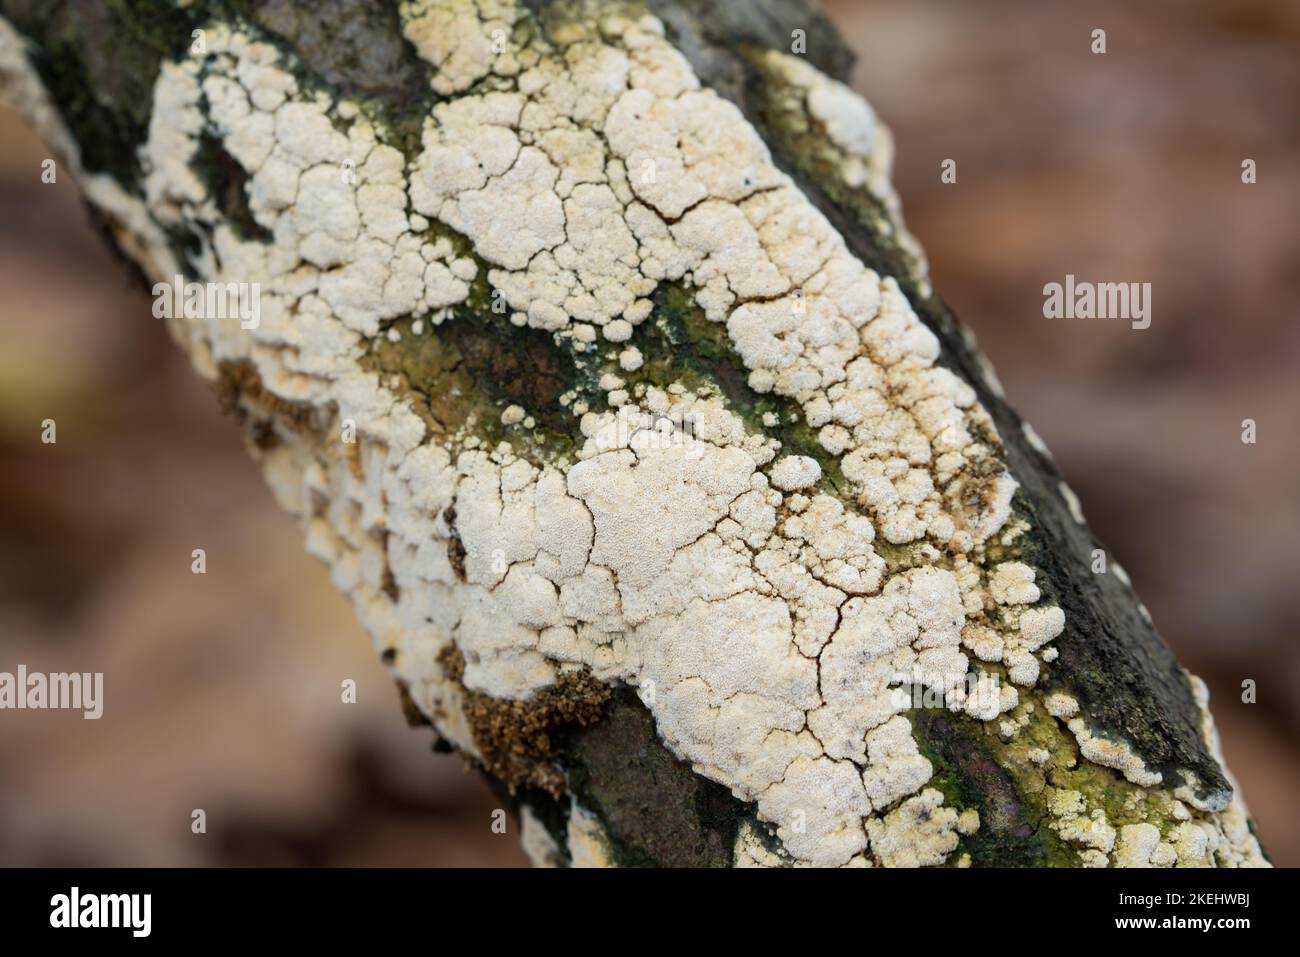 Ceriporia weißer Pilz auf toten Baumzweig Nahaufnahme selektiver Fokus Stockfoto